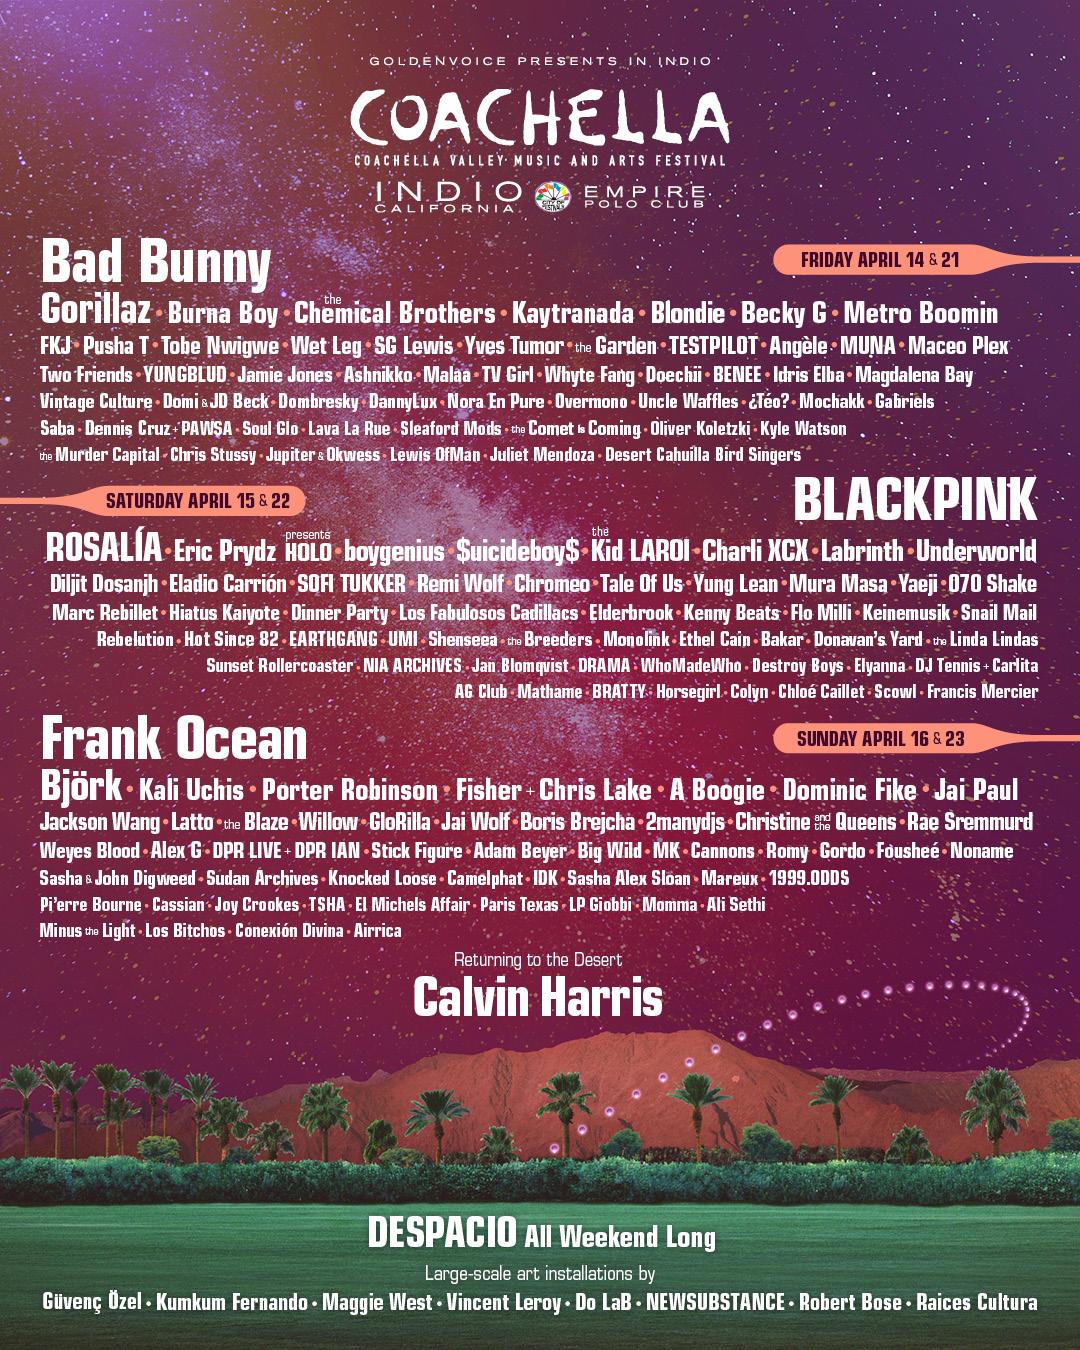 $!Bad Bunny, Blackpink y Frank Ocean encabezan cartel de Coachella 2023